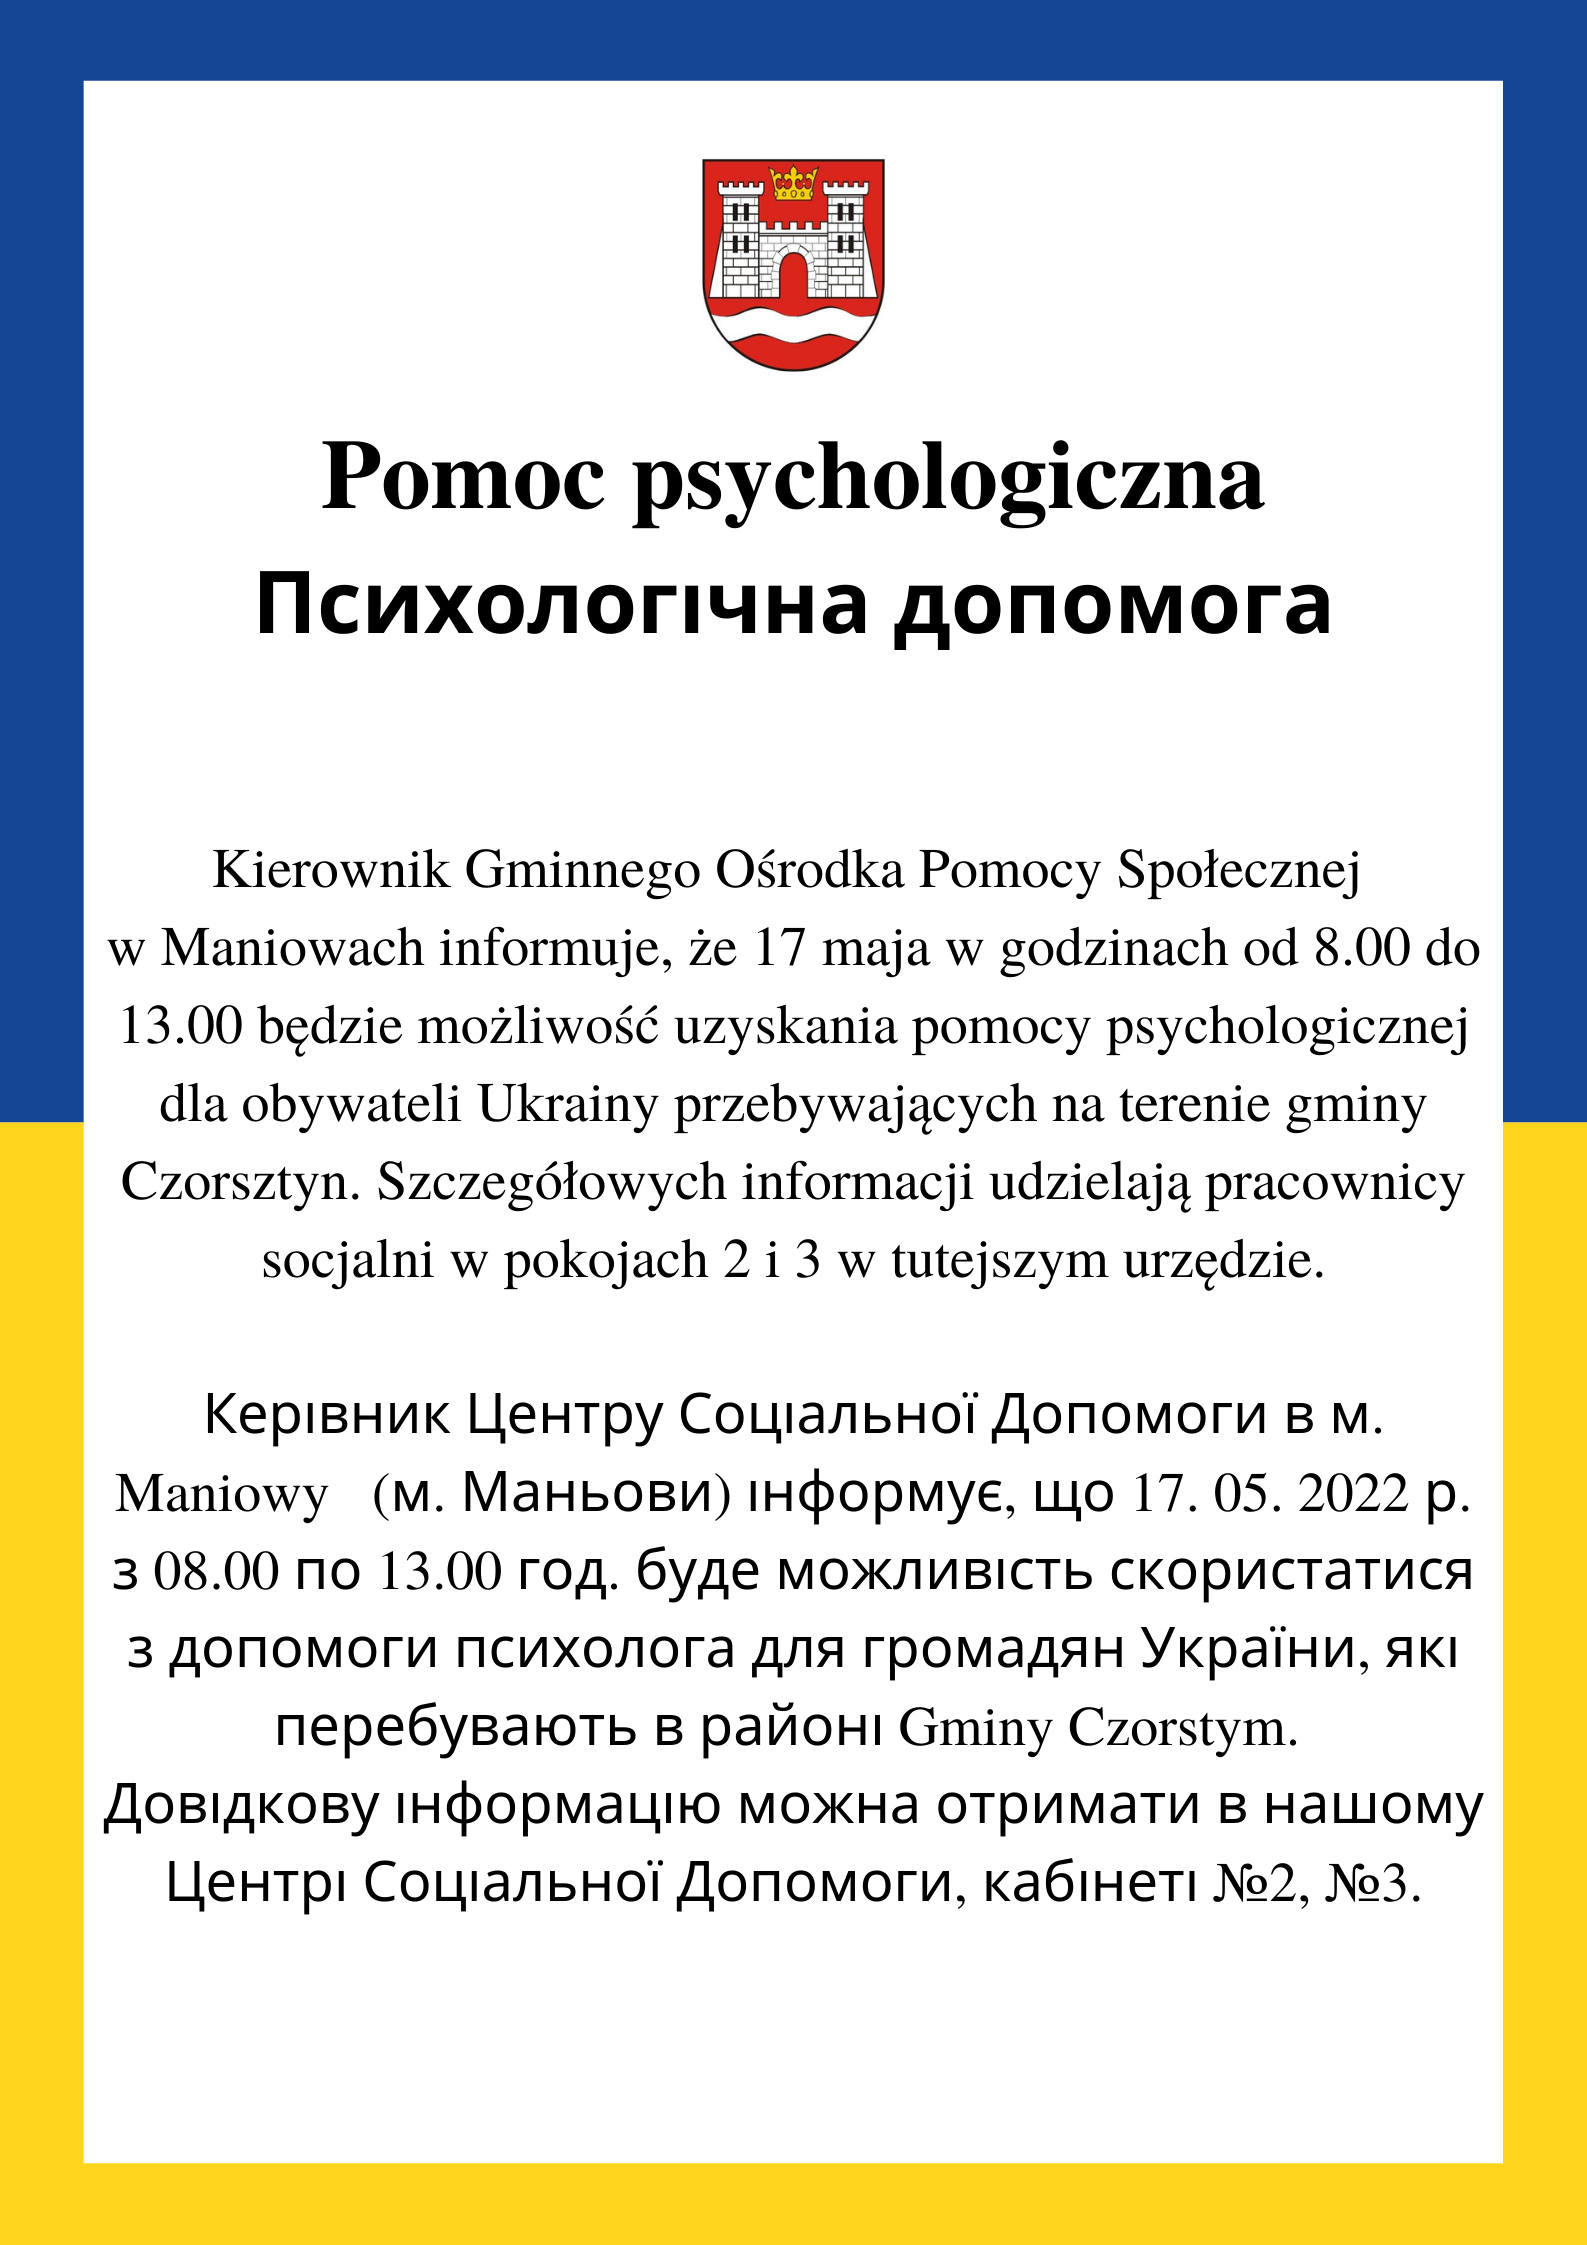 Pomoc psychologiczna w związku z sytuacją na Ukrainie